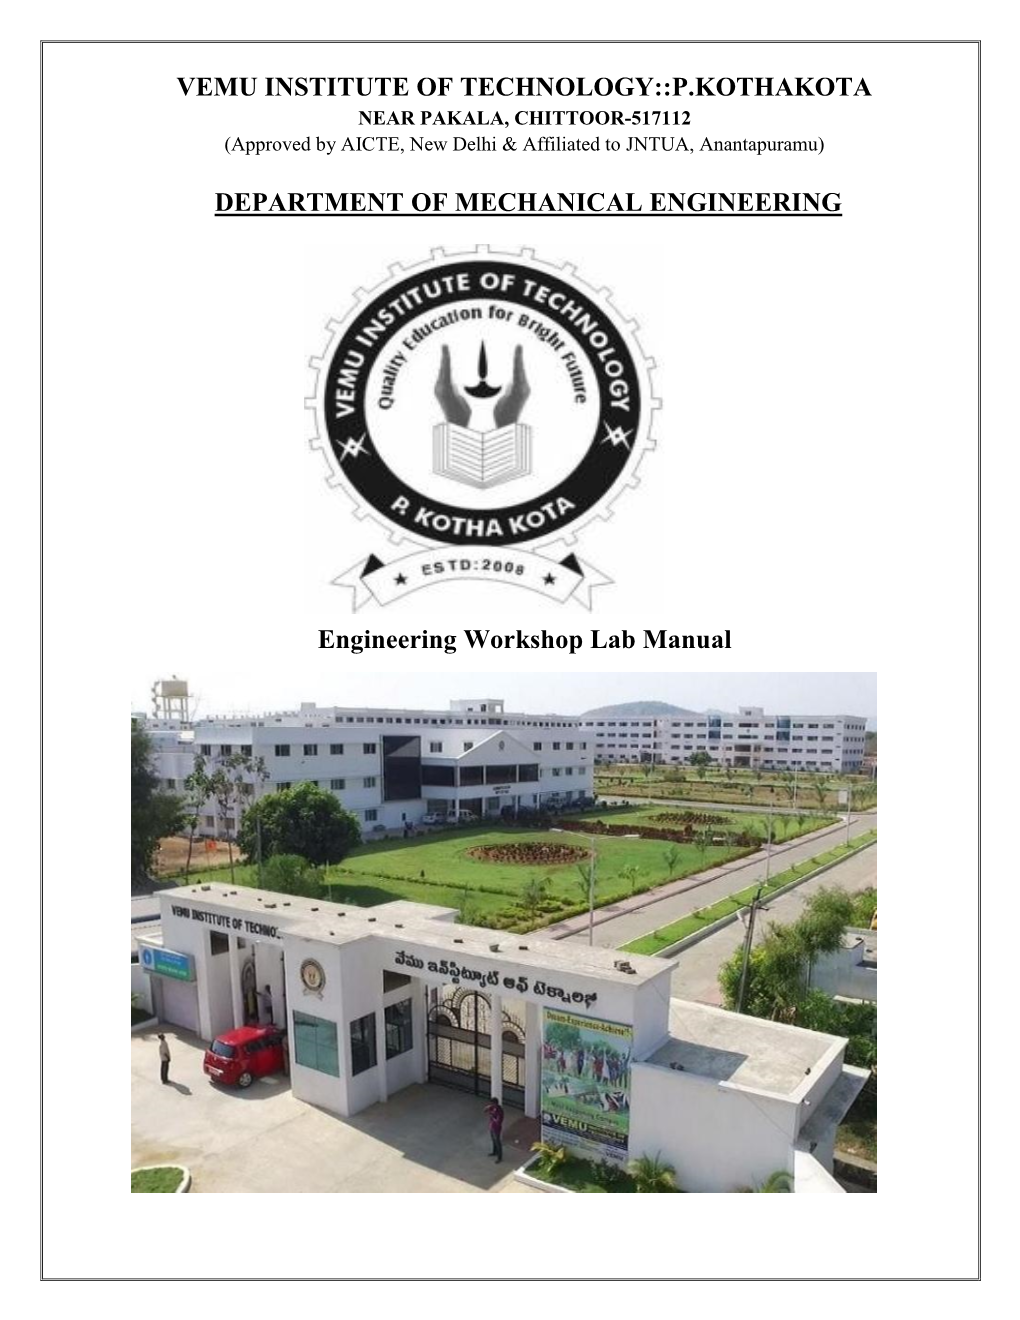 P.Kothakota Department of Mechanical Engineering